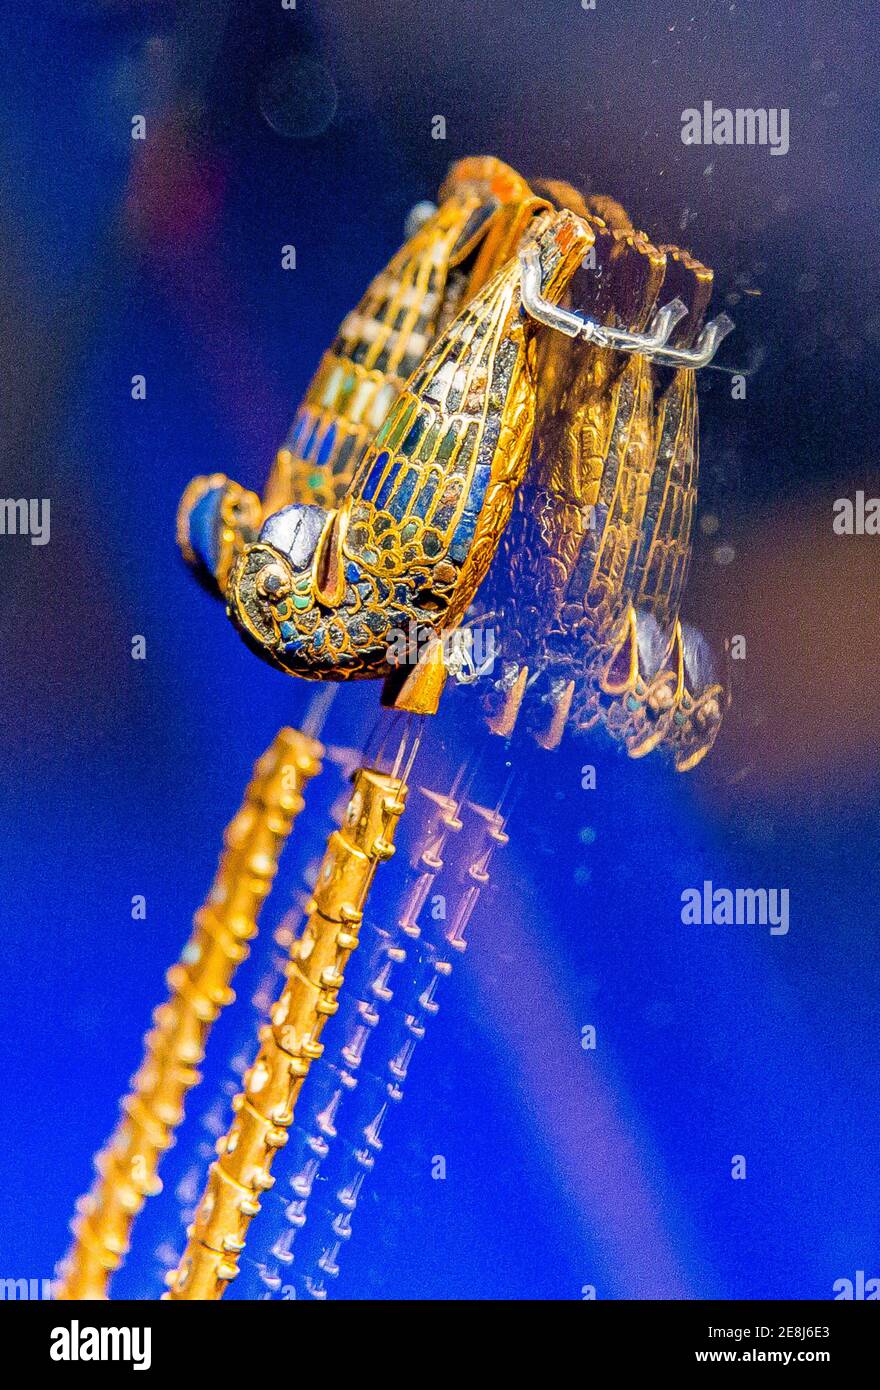 Égypte, le Caire, bijoux Toutankhamon, : ce fermoir pectoral montre 2 oiseaux de proie, visuellement dupliqués par des reflets de verre. Banque D'Images